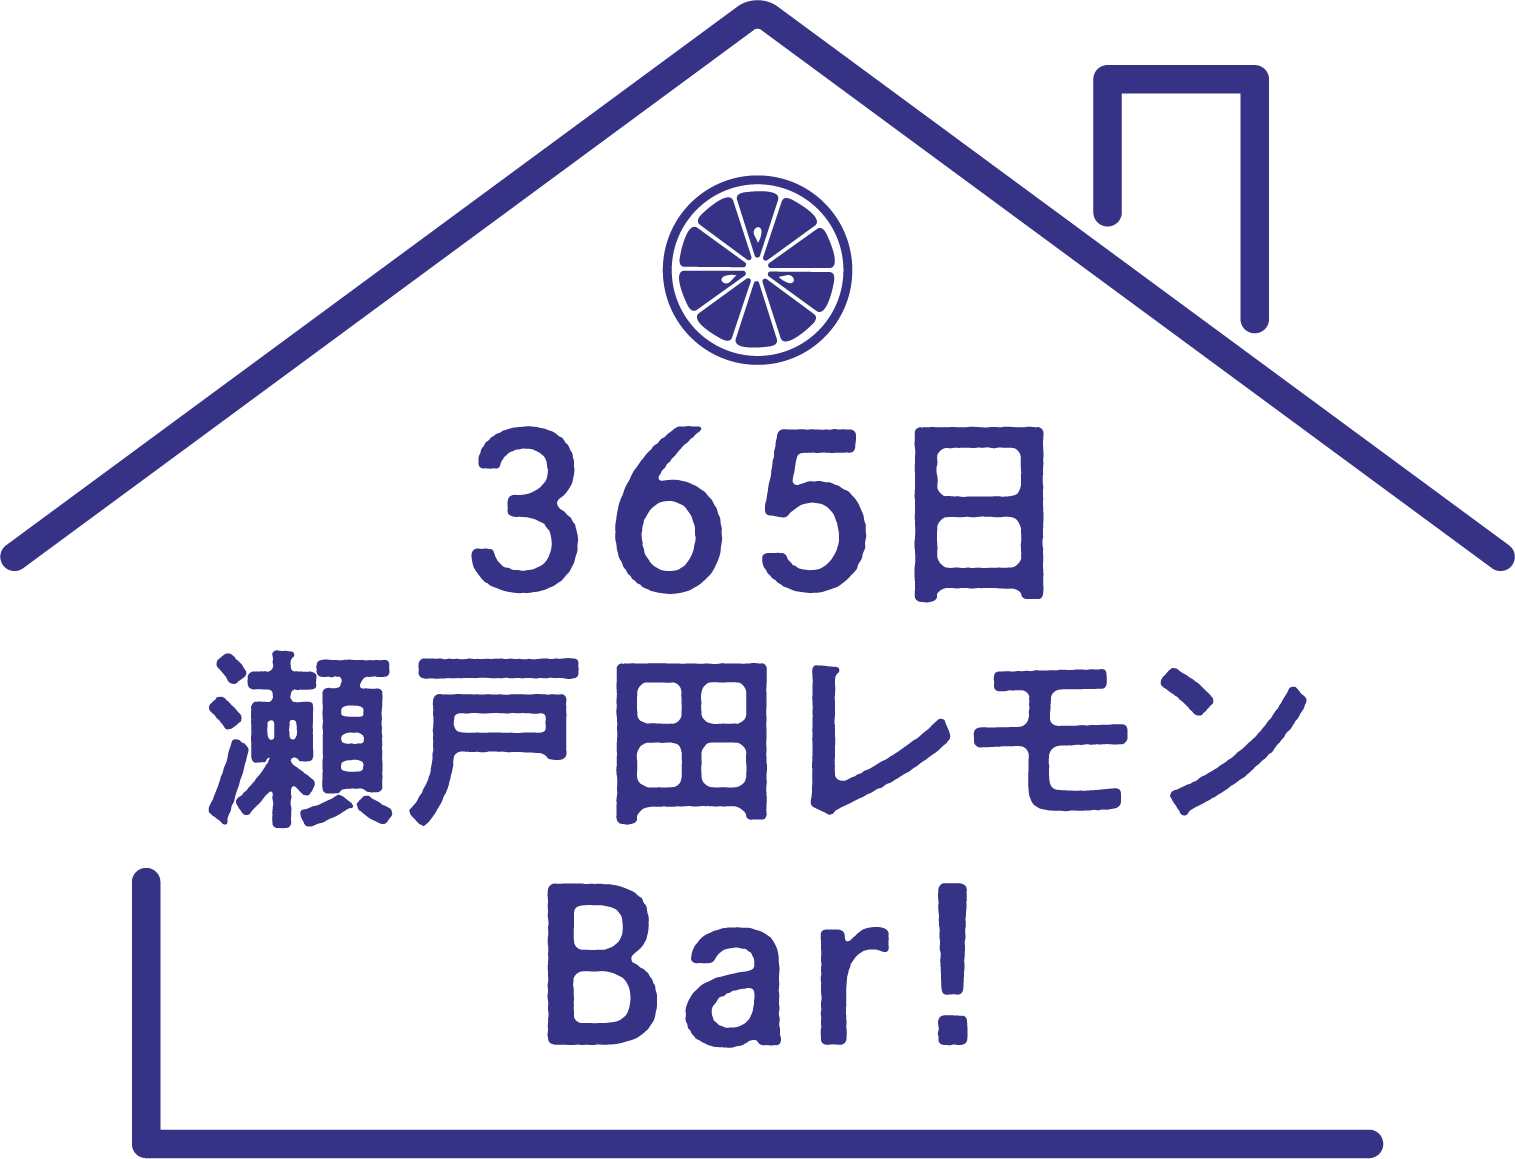 365日瀬戸田レモンBar!